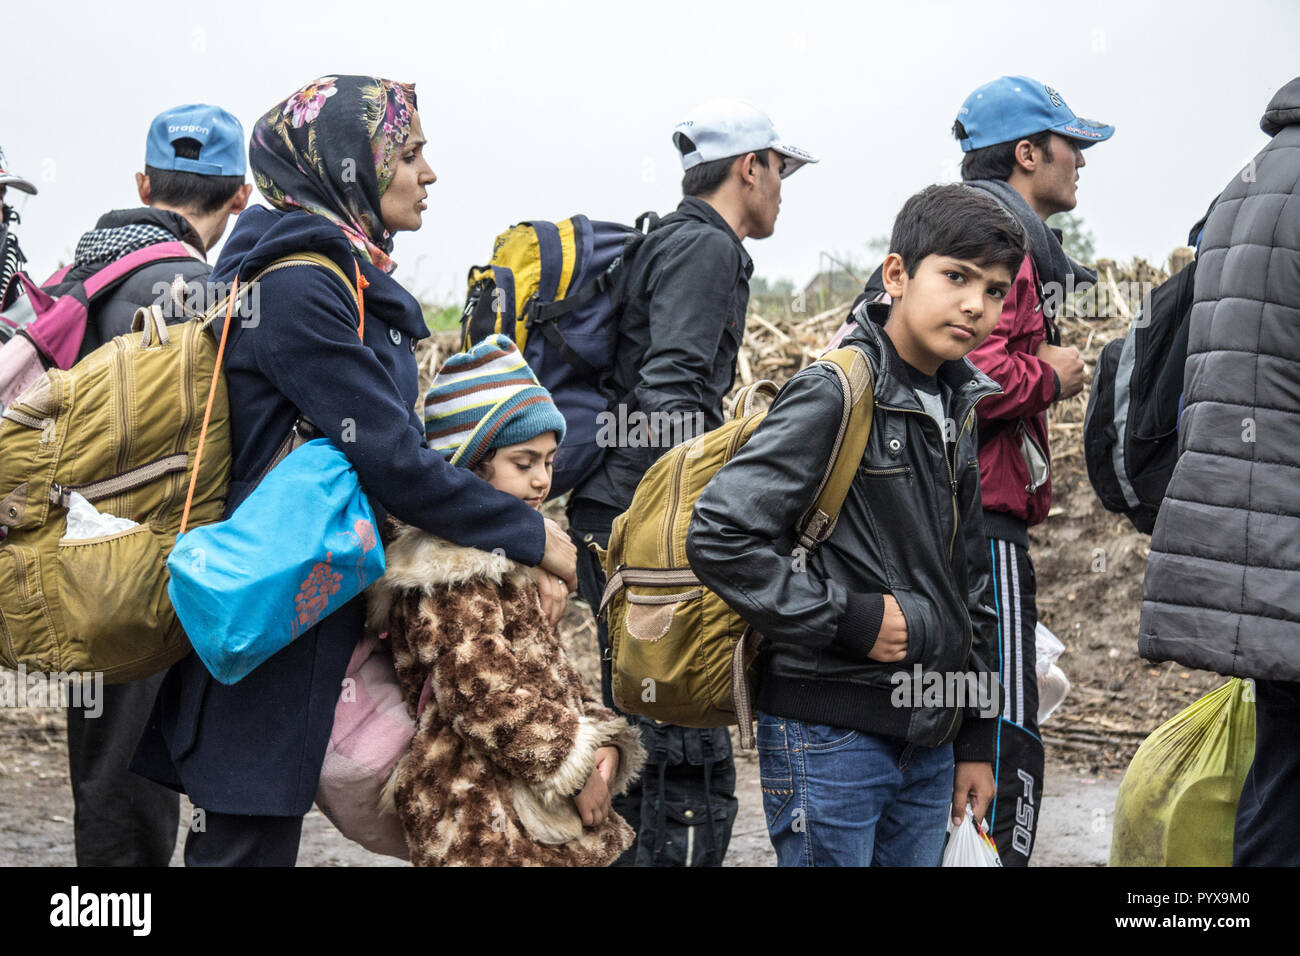 BERKASOVO, Serbien - 17. OKTOBER 2015: die Gruppe der Flüchtlinge, vor allem Kinder, warten die Kroatien Serbien Grenze, zwischen den Städten Bapska und Stockfoto